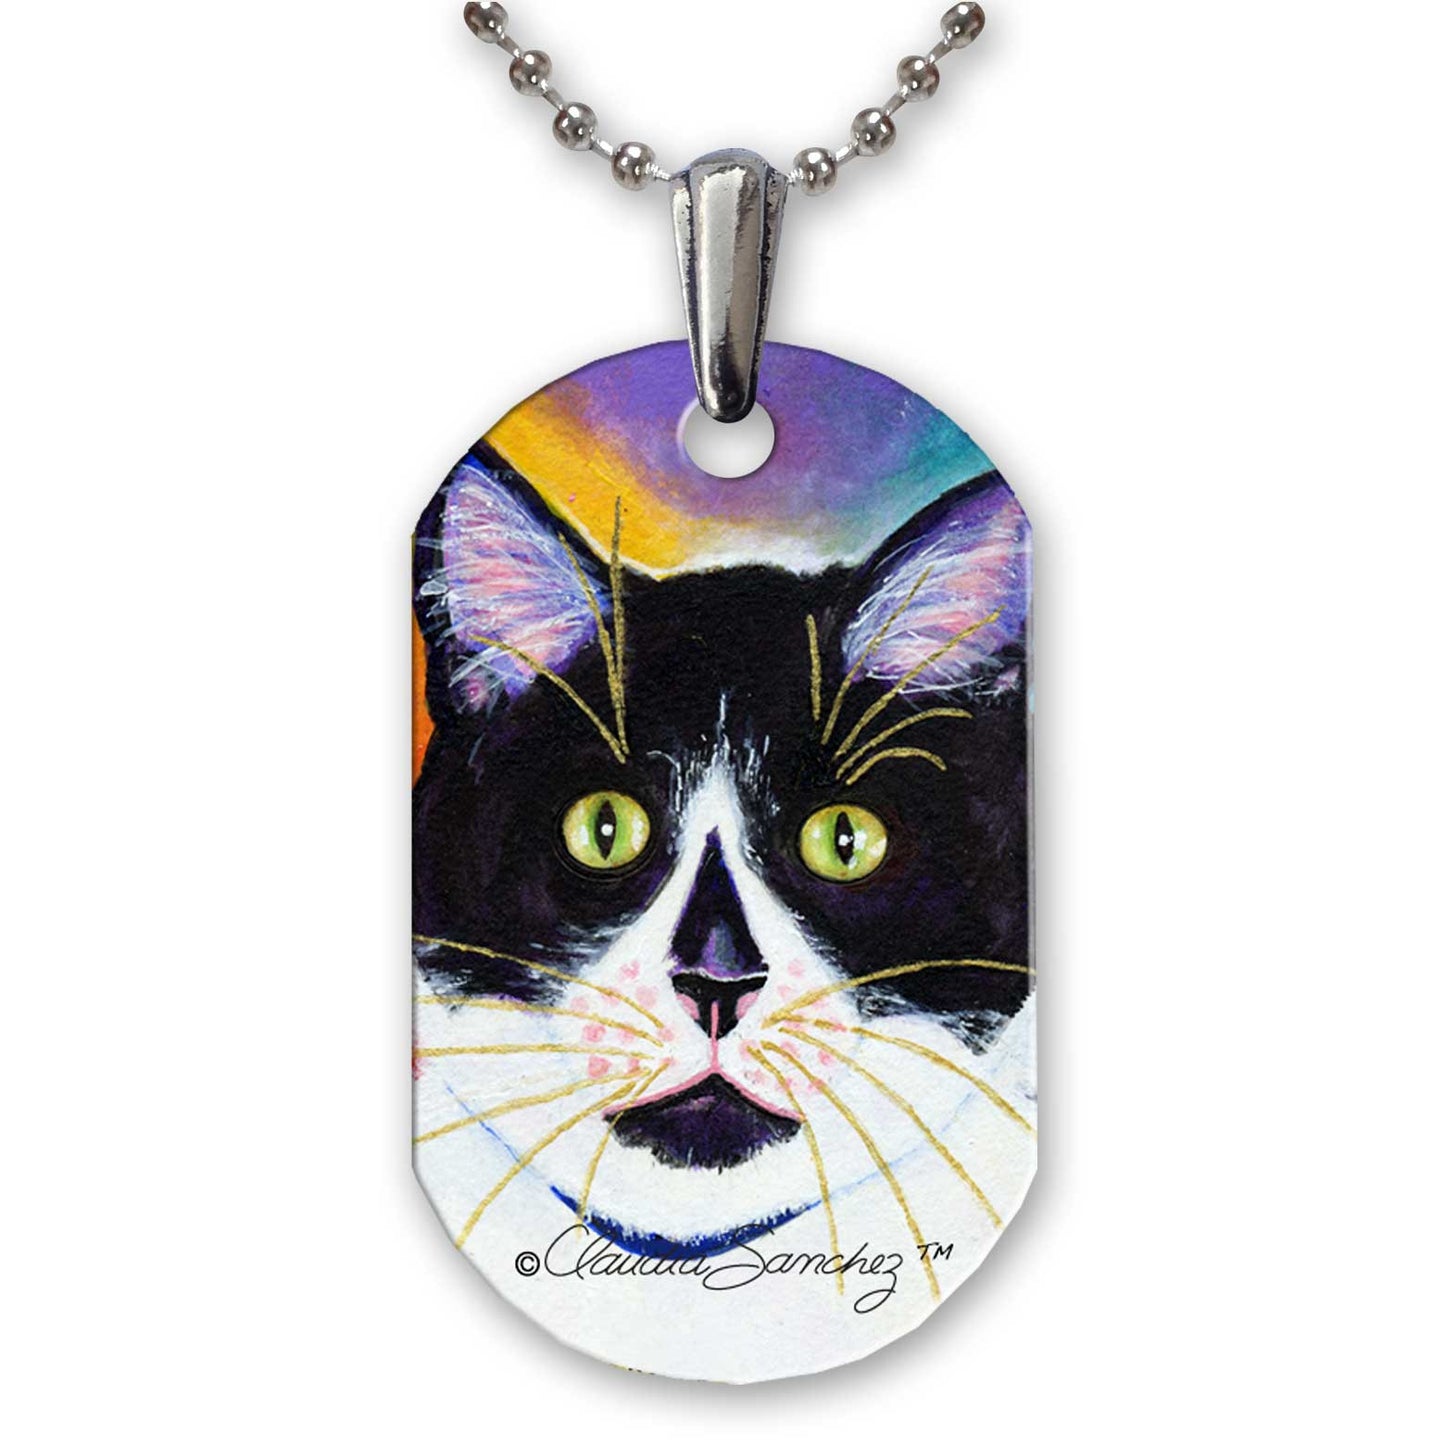 Bootie Cat Art Aluminum Pendant Necklace by Claudia Sanchez - White